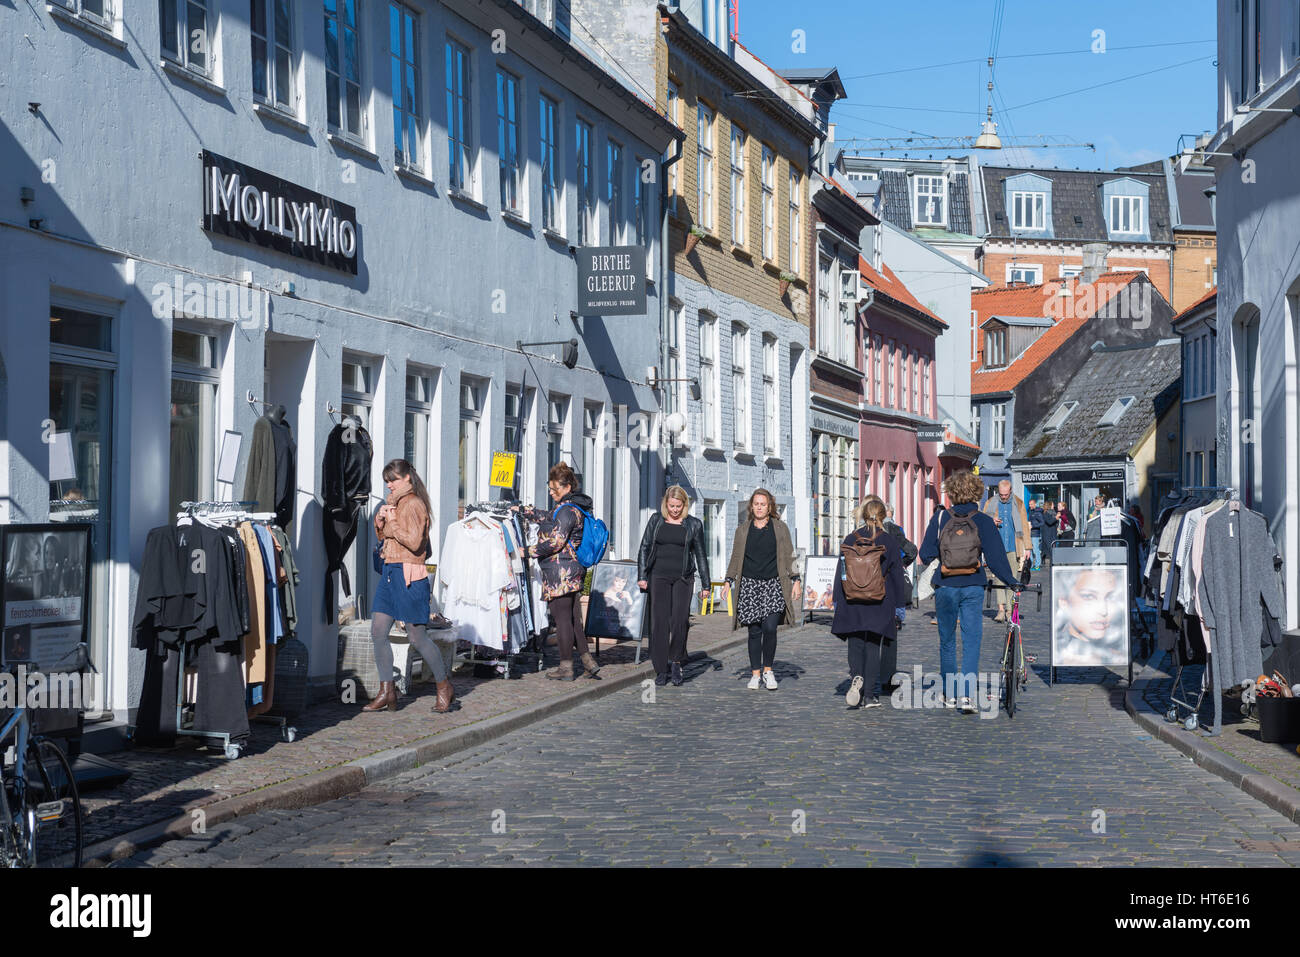 Ir de compras en el centro de la ciudad de Aarhus, capital europea de la Cultura en 2017, en el norte de Jutlandia, Dinamarca Foto de stock